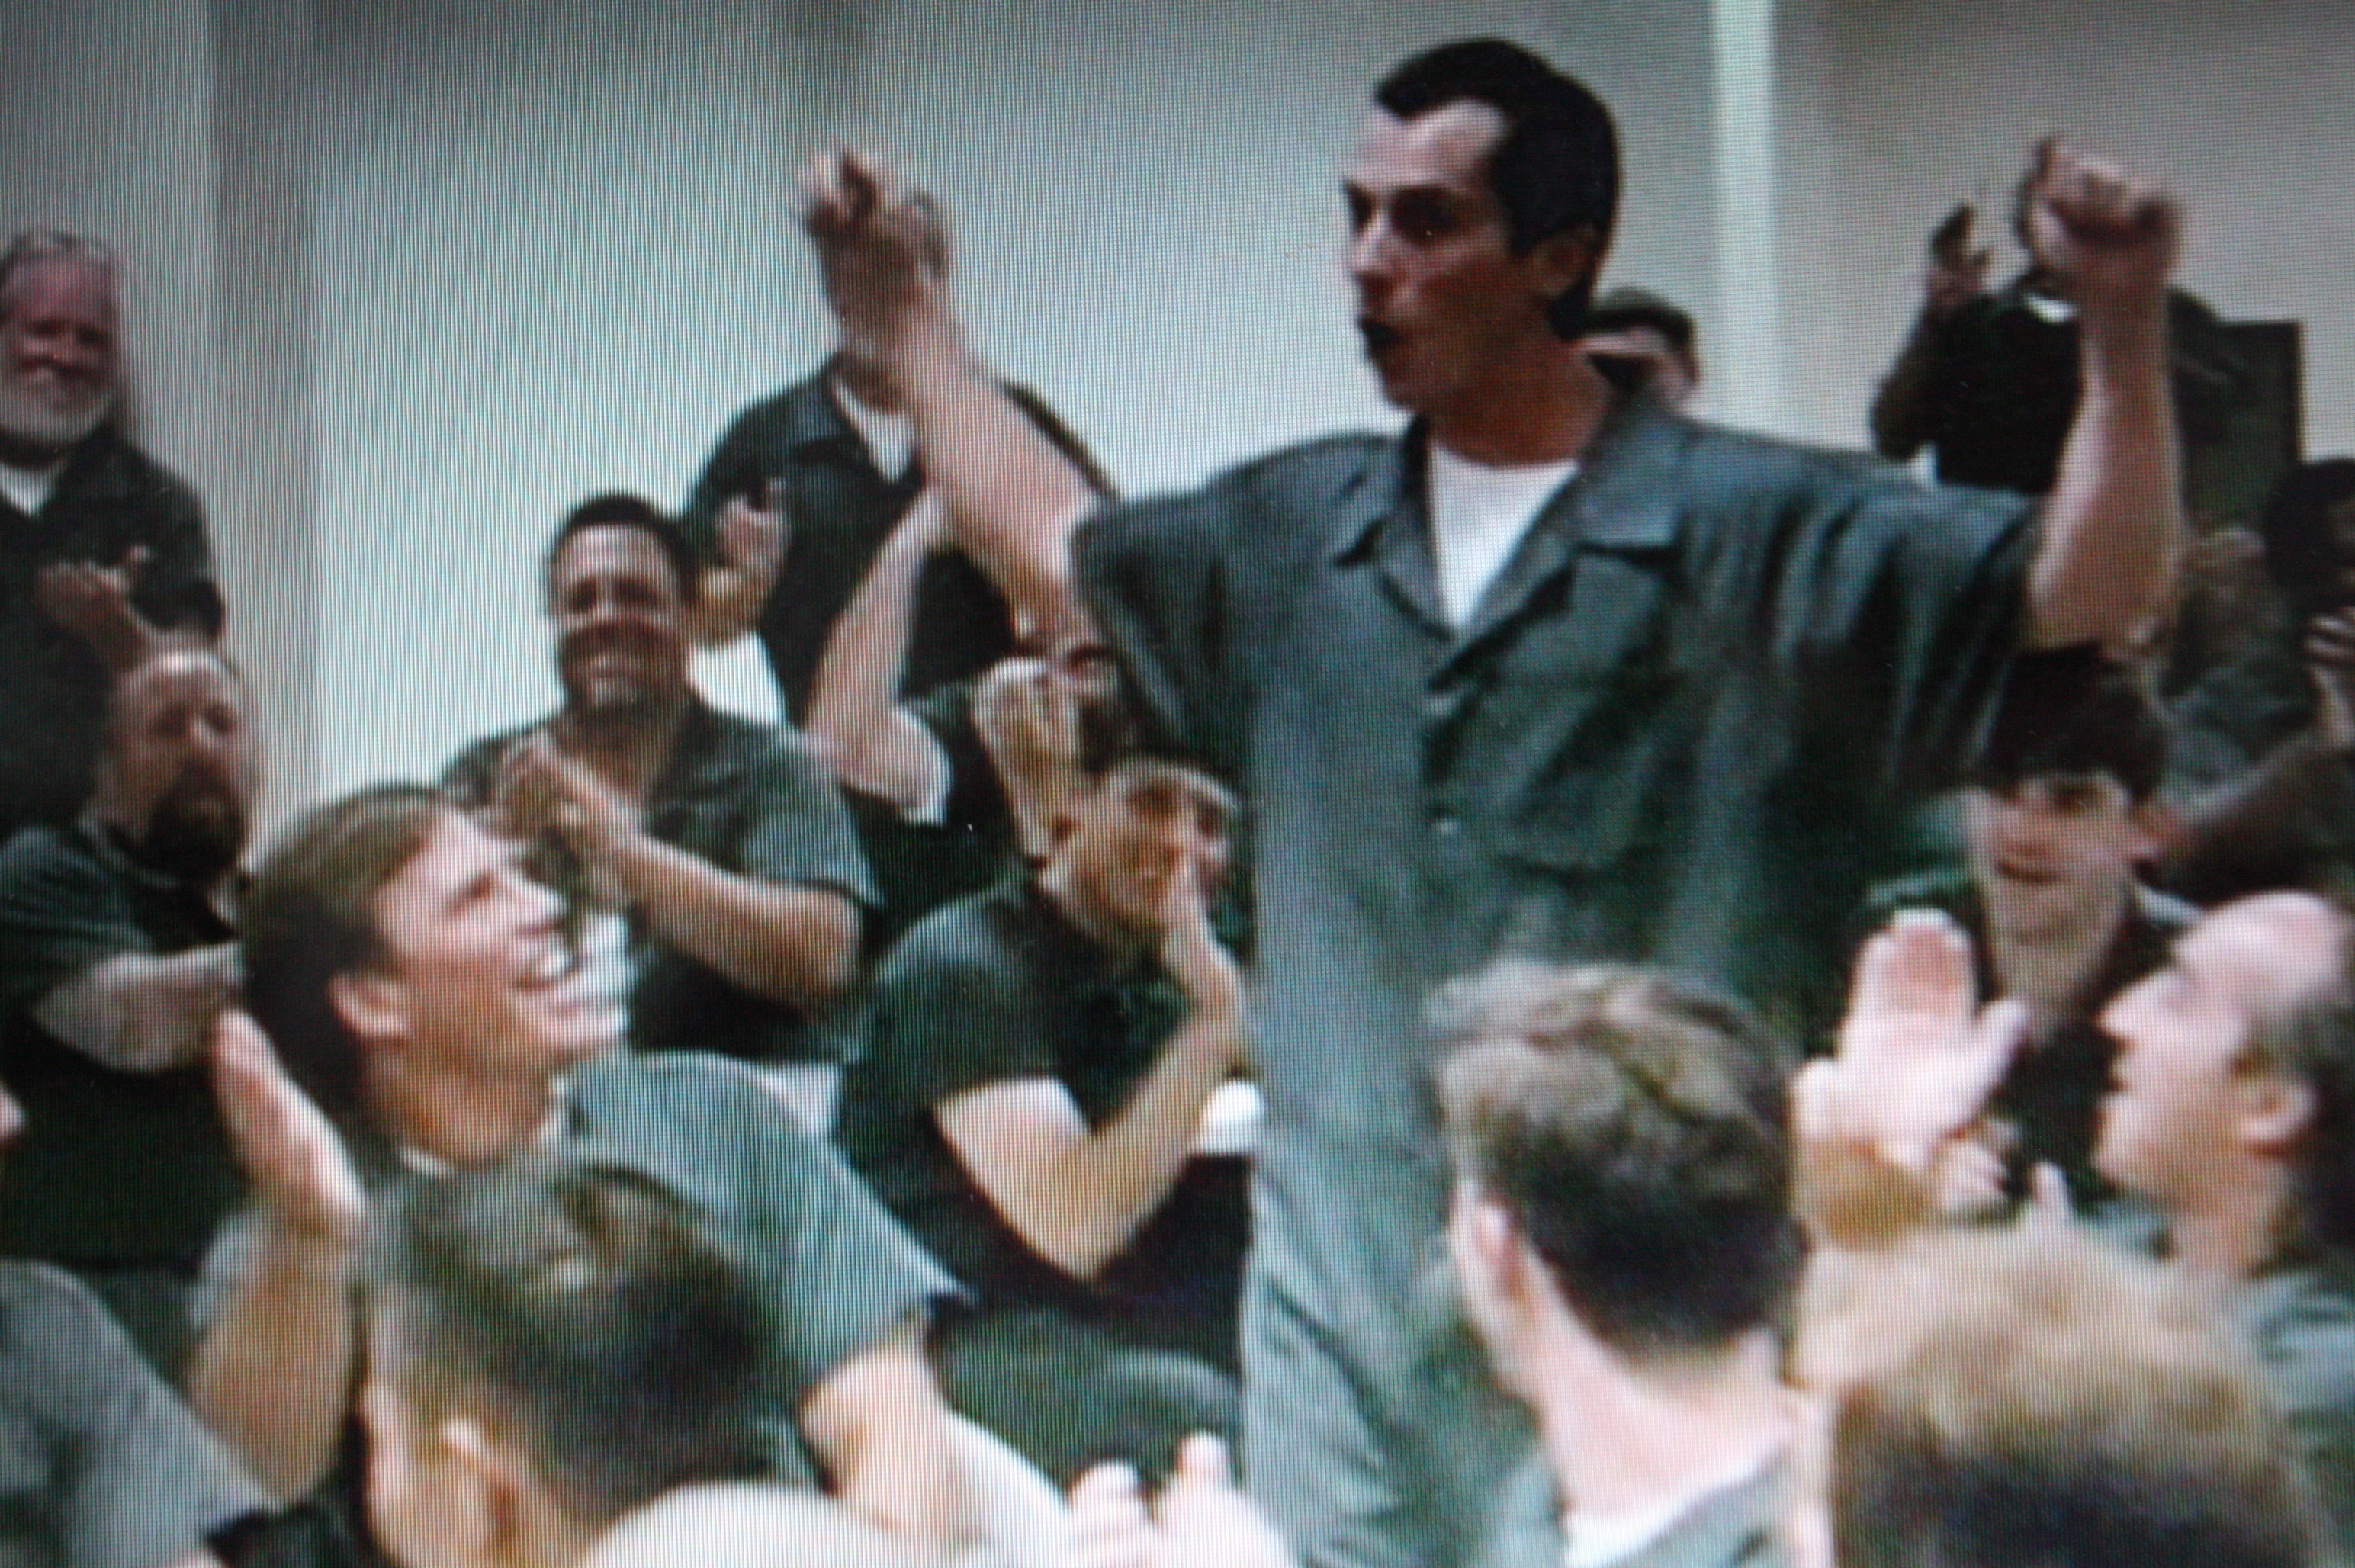 The Fighter Jeff Corazzini and Christian Bale in prison scene